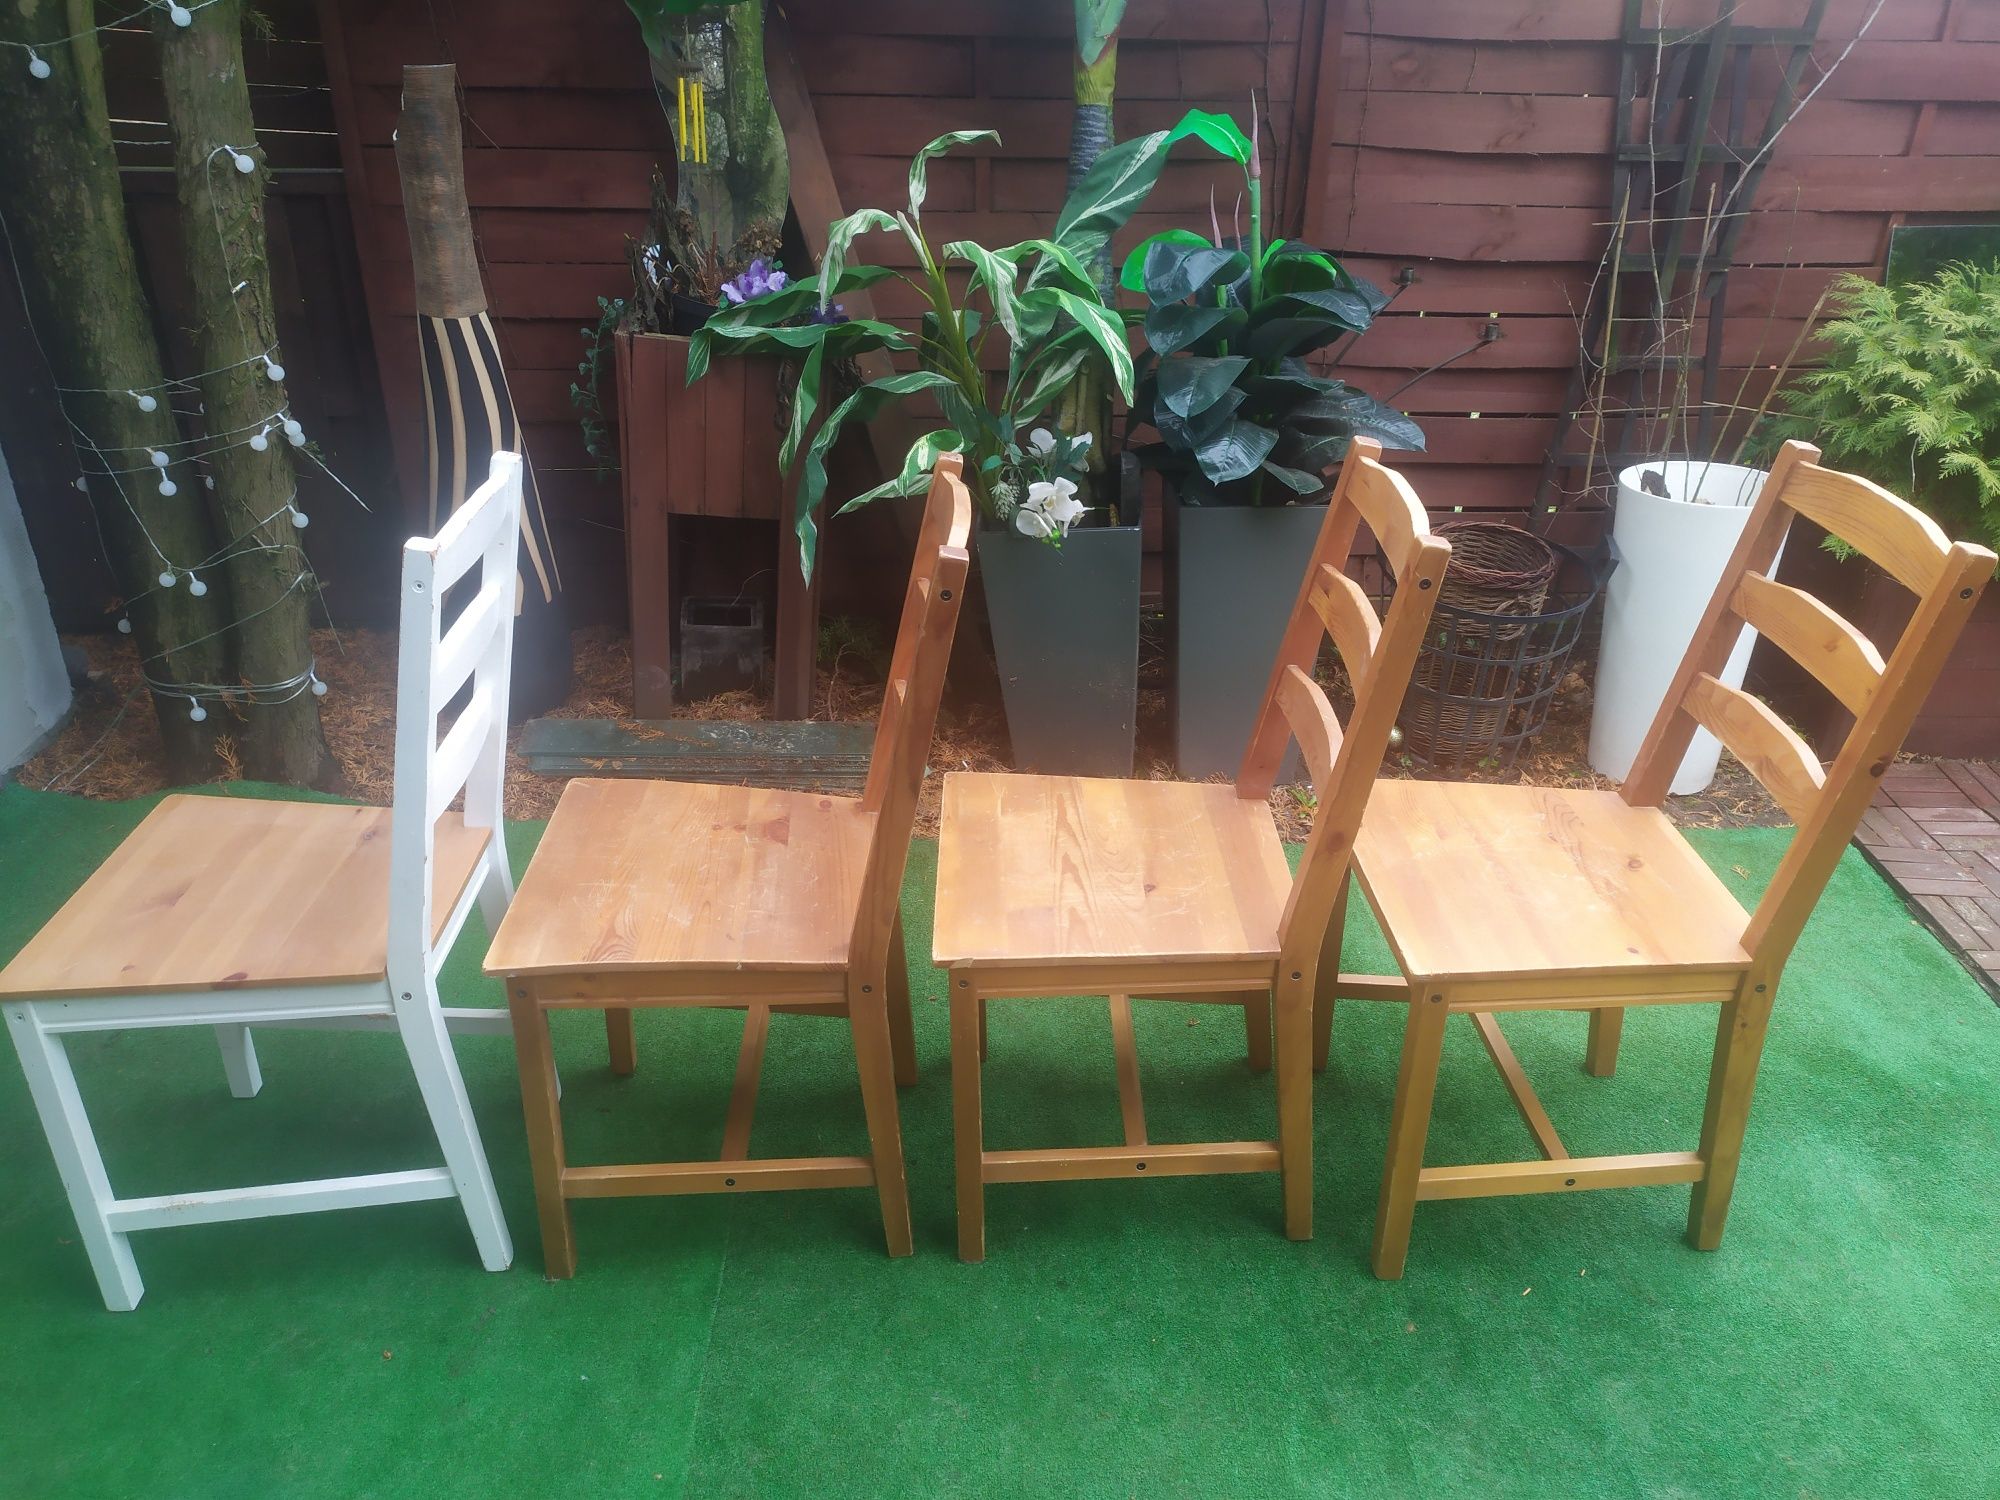 4 drewniane krzesła Ikea Jokkmokk kuchnia, salon, jadalnia